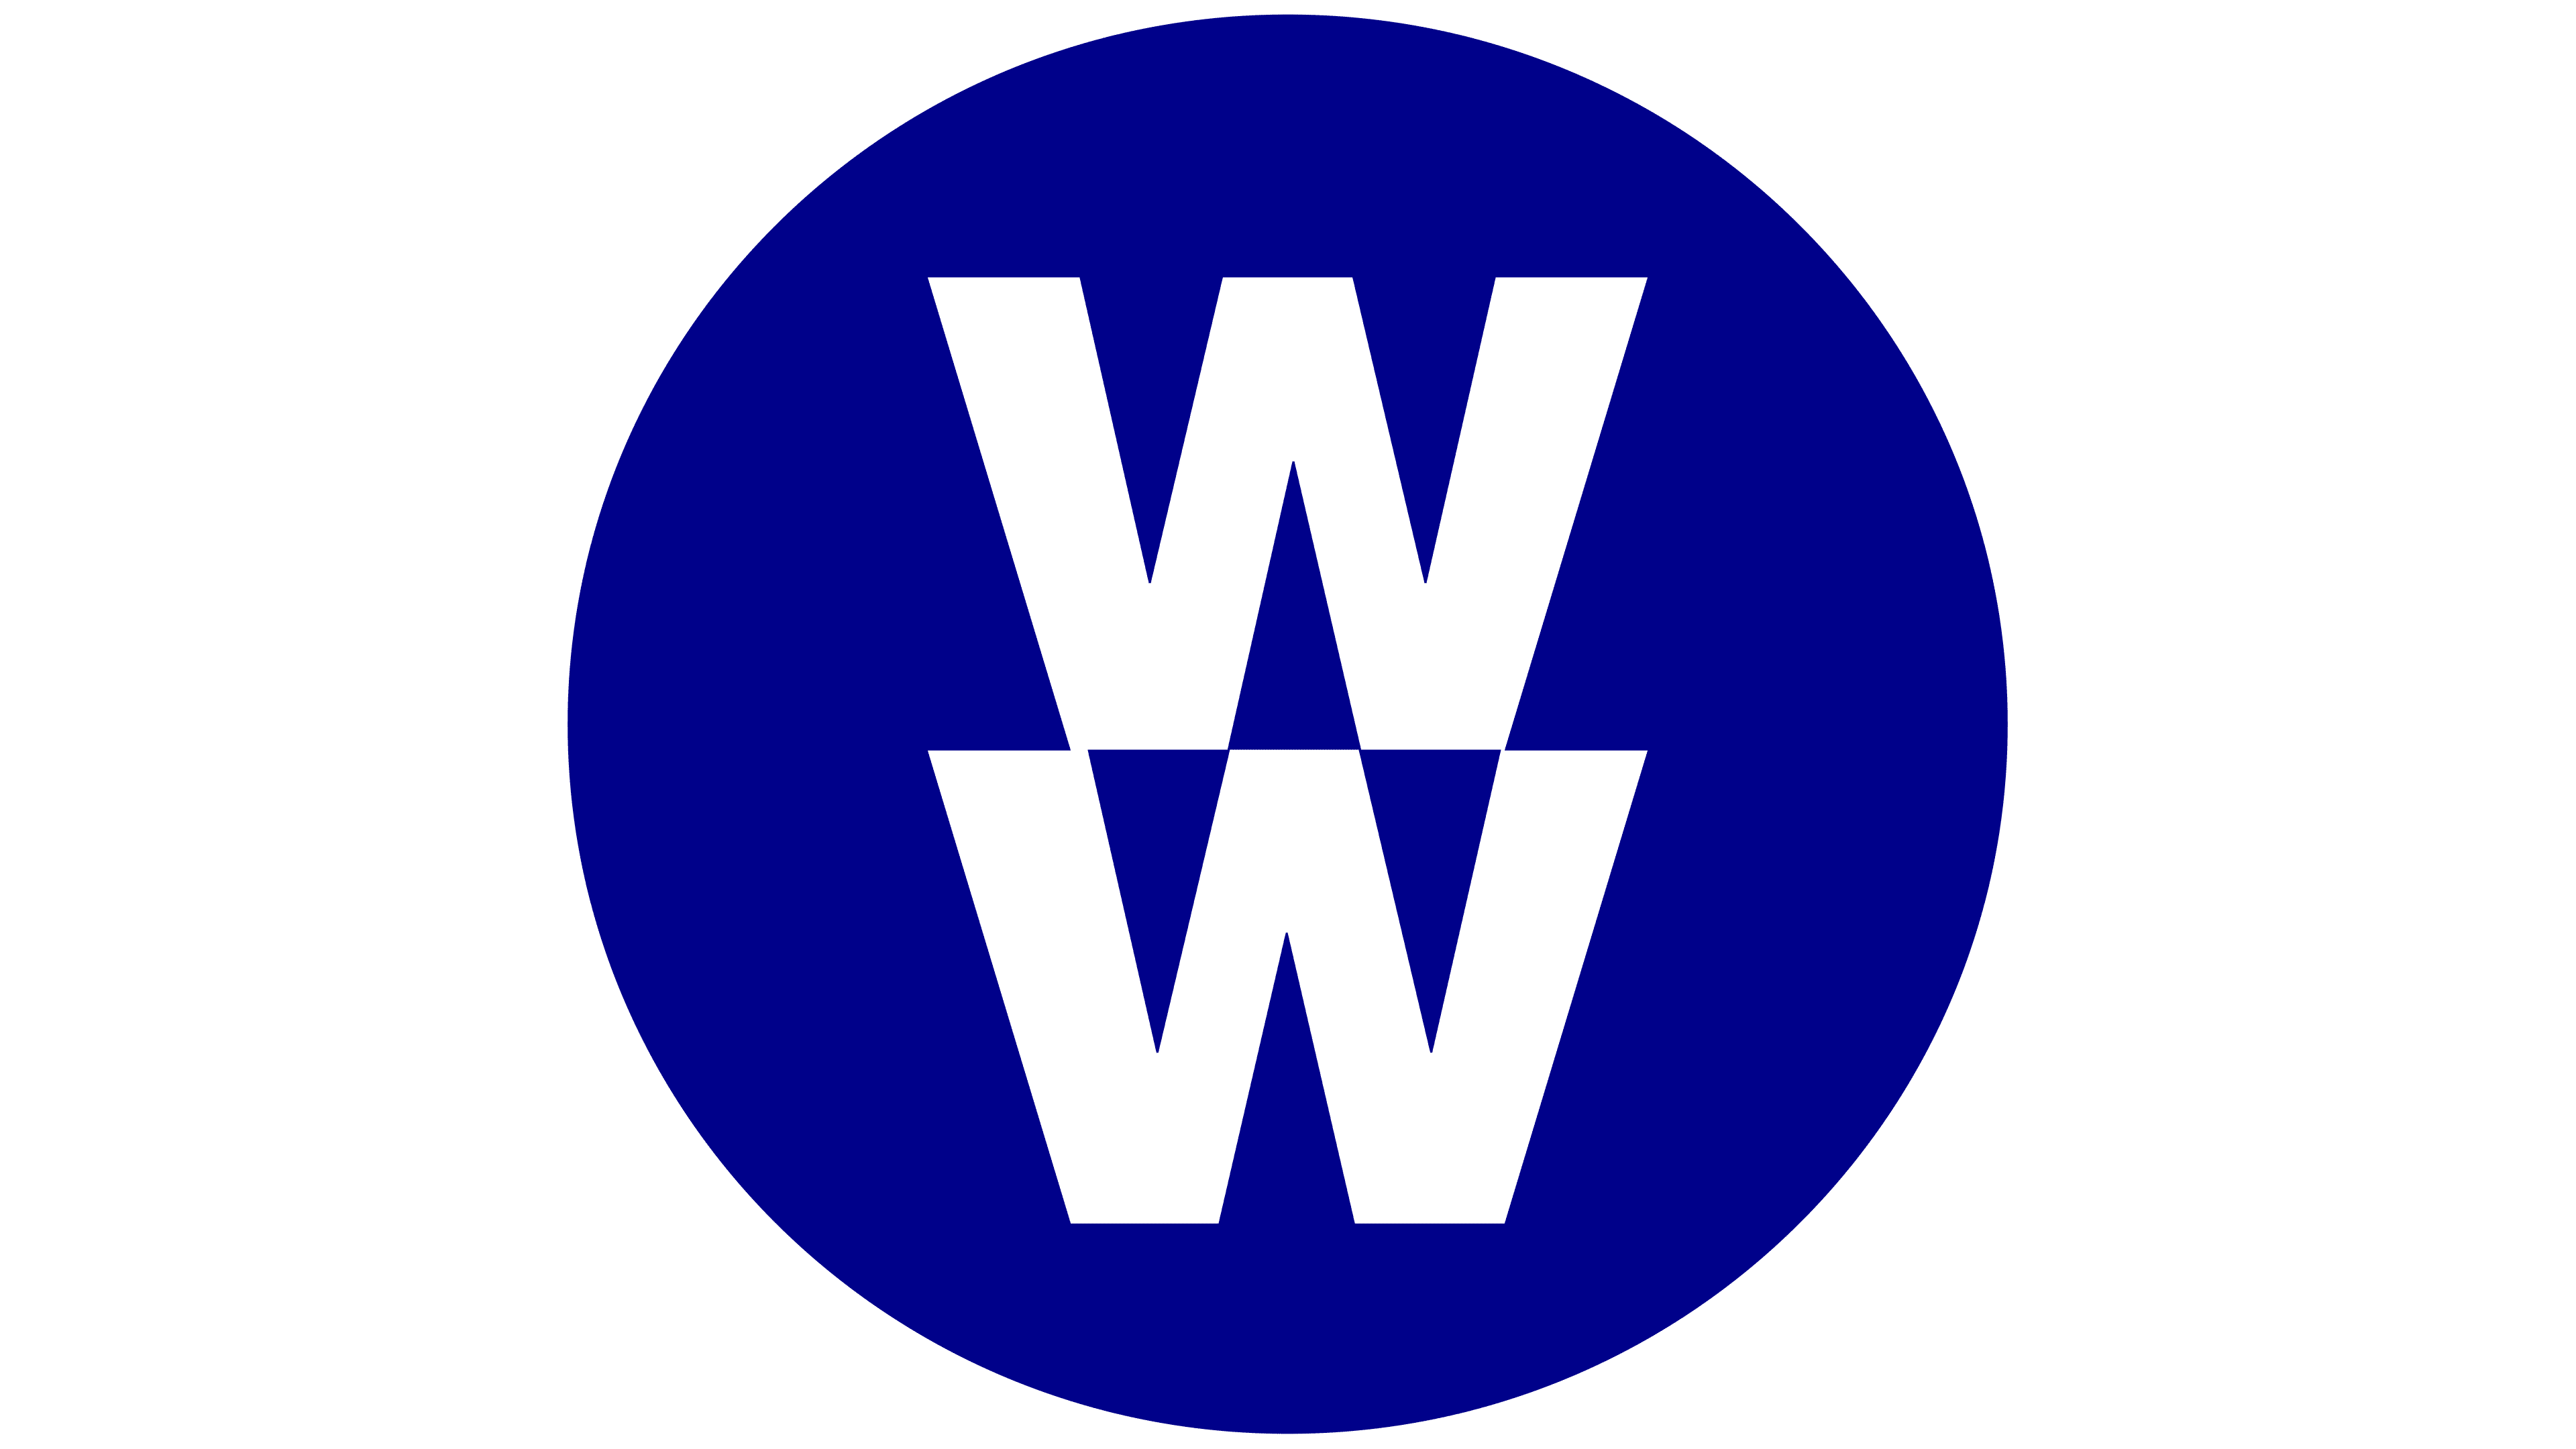 WW-Weightwatchers